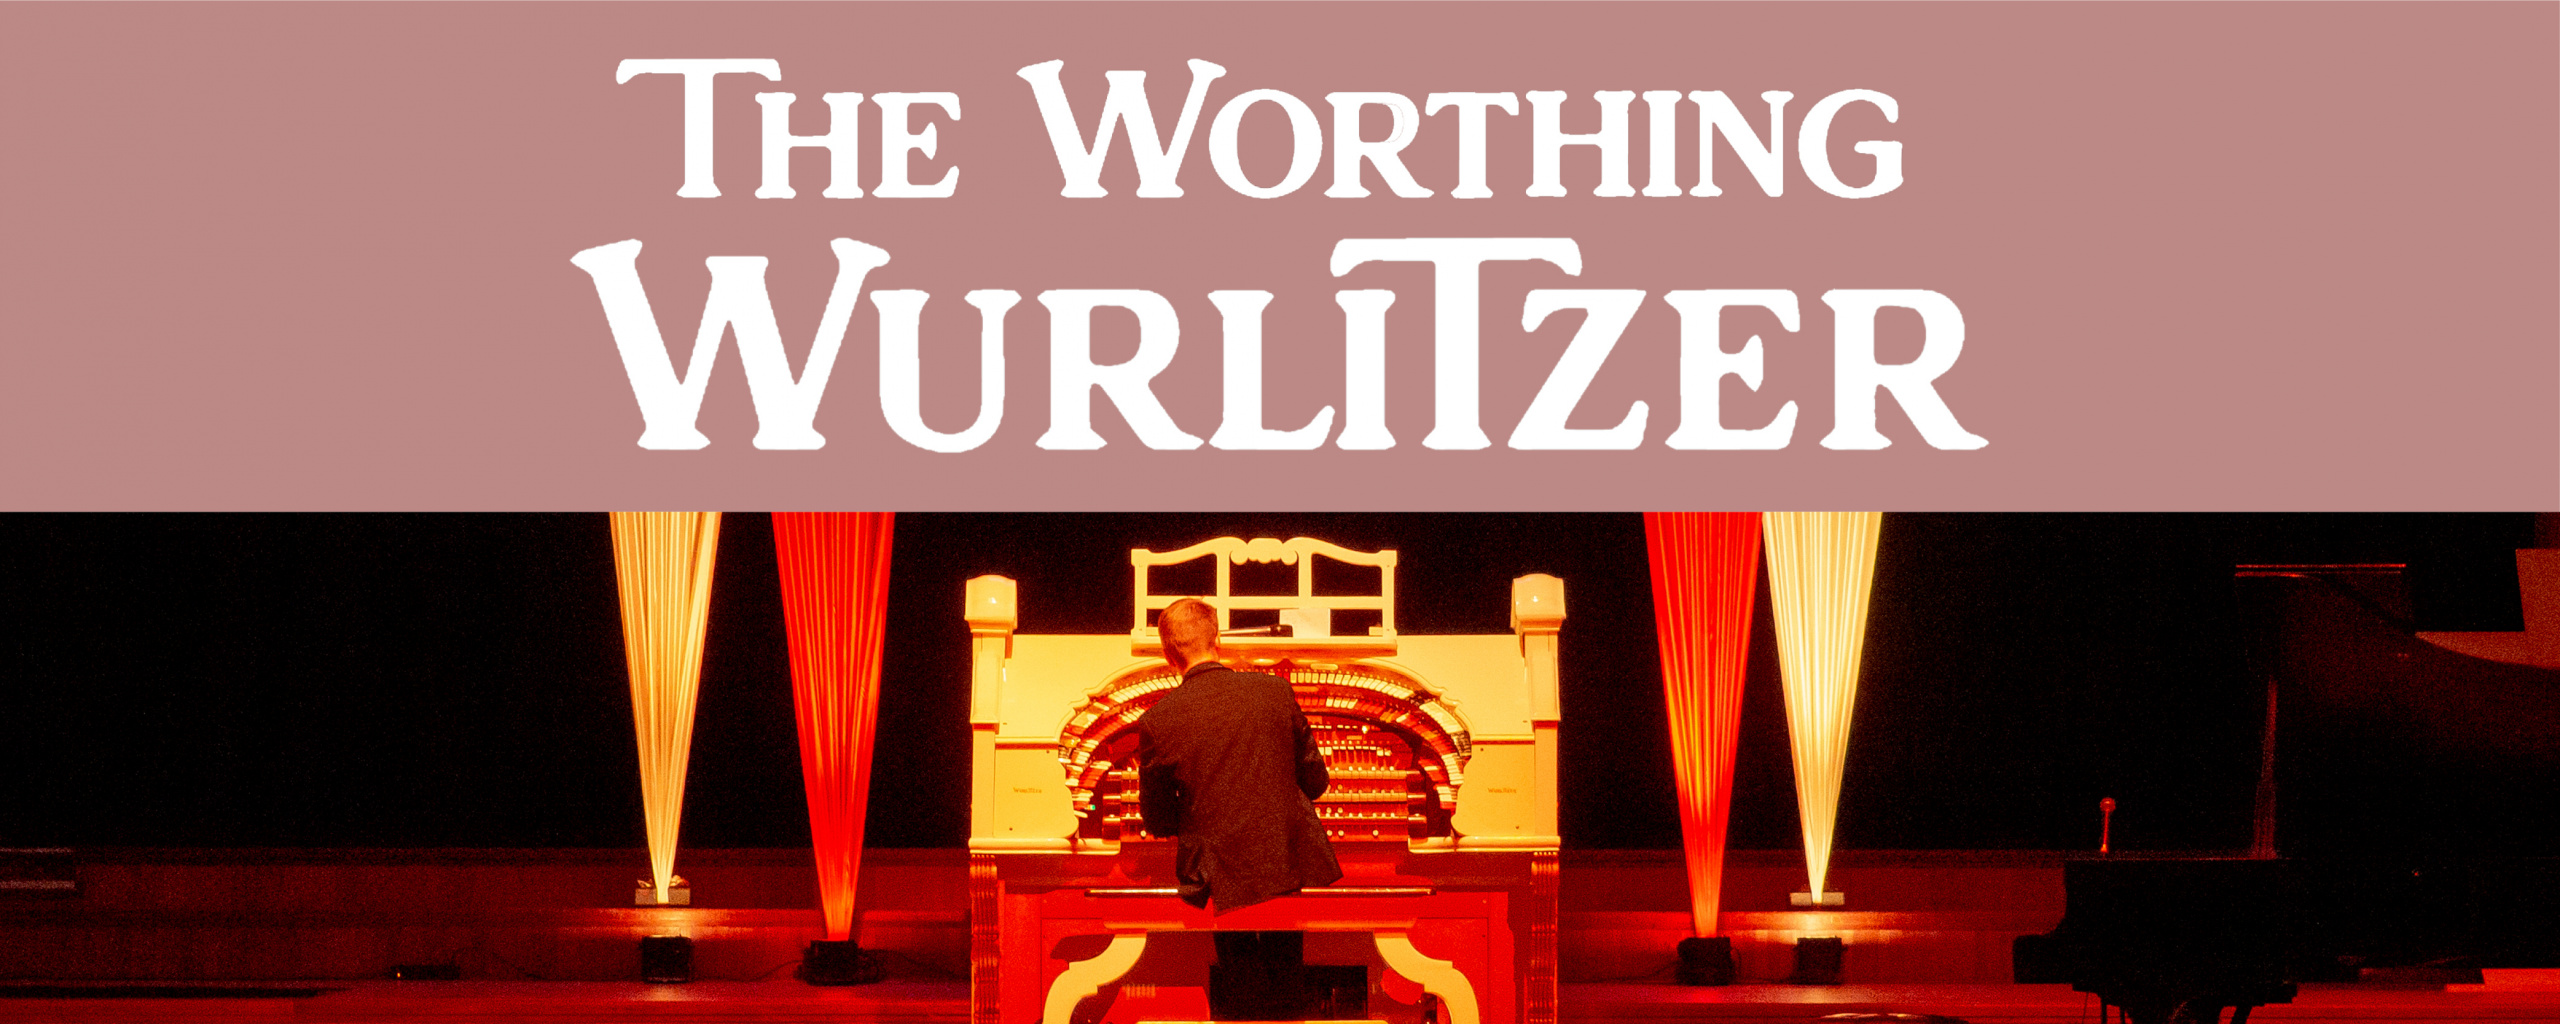 Worthing Wurlitzer